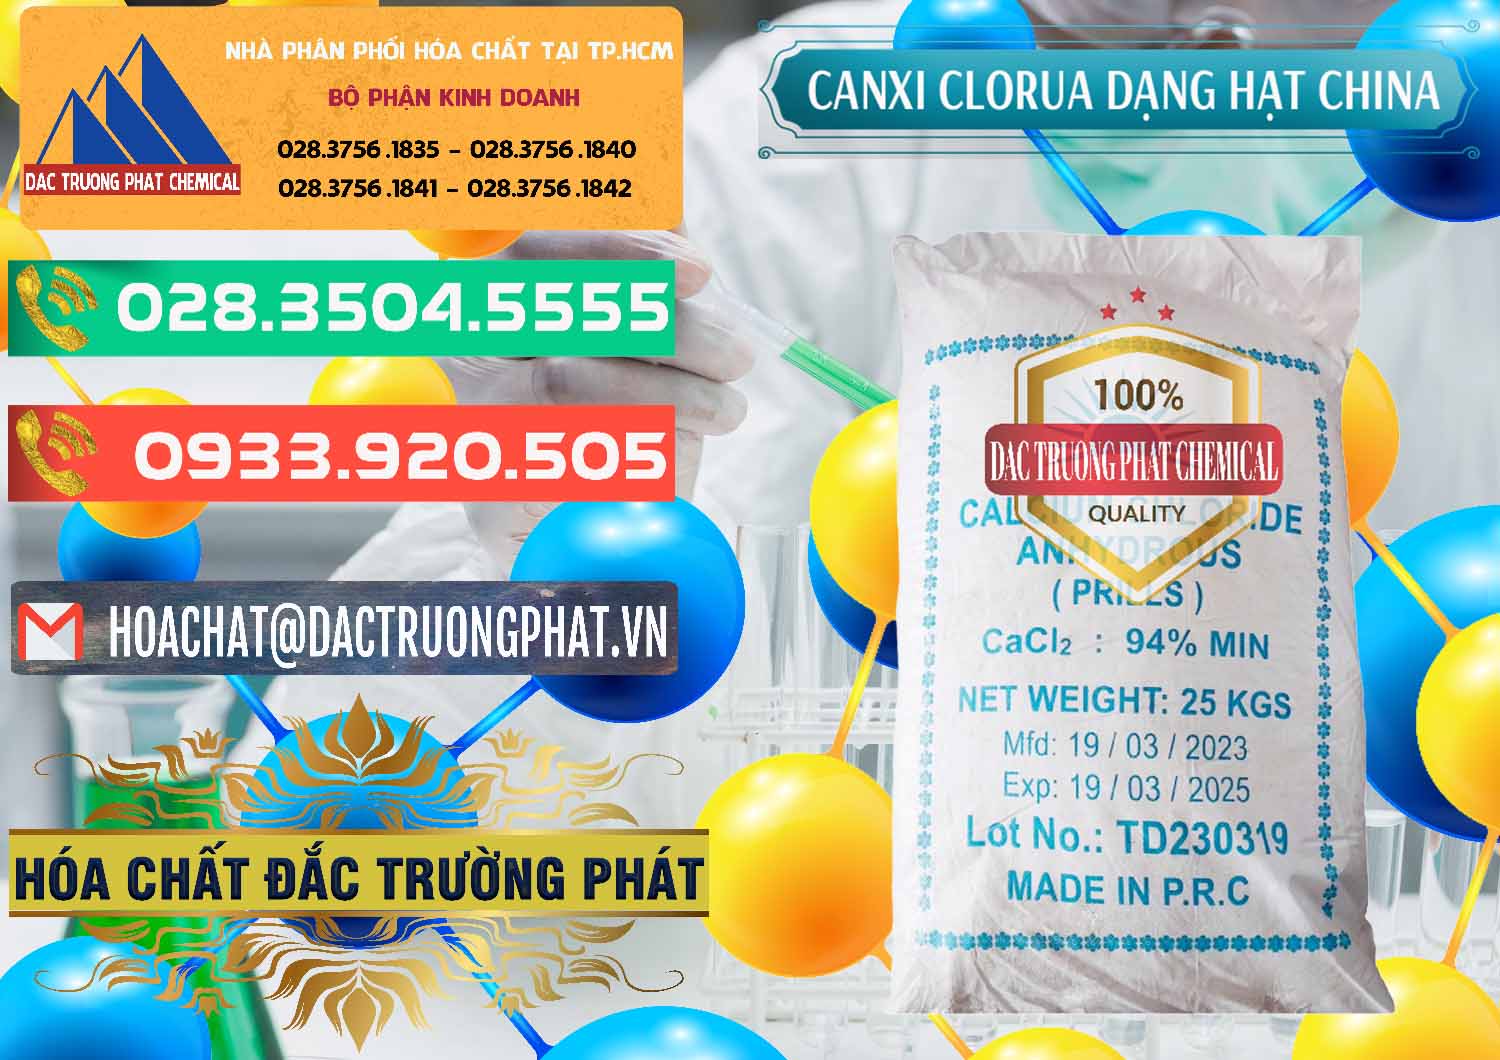 Nơi cung cấp - bán CaCl2 – Canxi Clorua 94% Dạng Hạt Trung Quốc China - 0373 - Chuyên bán & phân phối hóa chất tại TP.HCM - congtyhoachat.com.vn